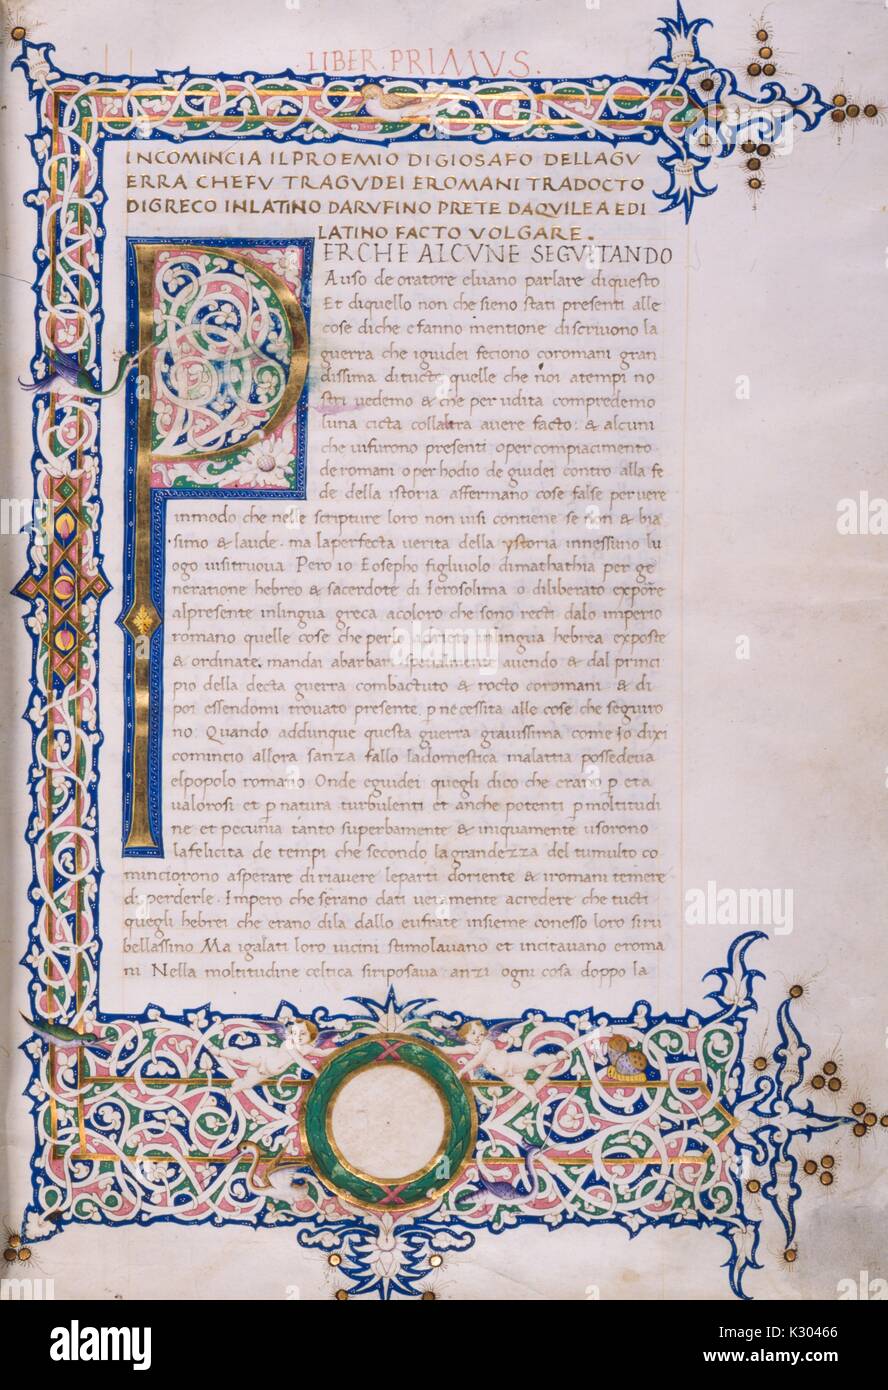 Manuscrit enluminé page contenant du texte avec une frontière et la première lettre, illuminé d'un c, 1450. Manuscrit du 15e siècle. Banque D'Images